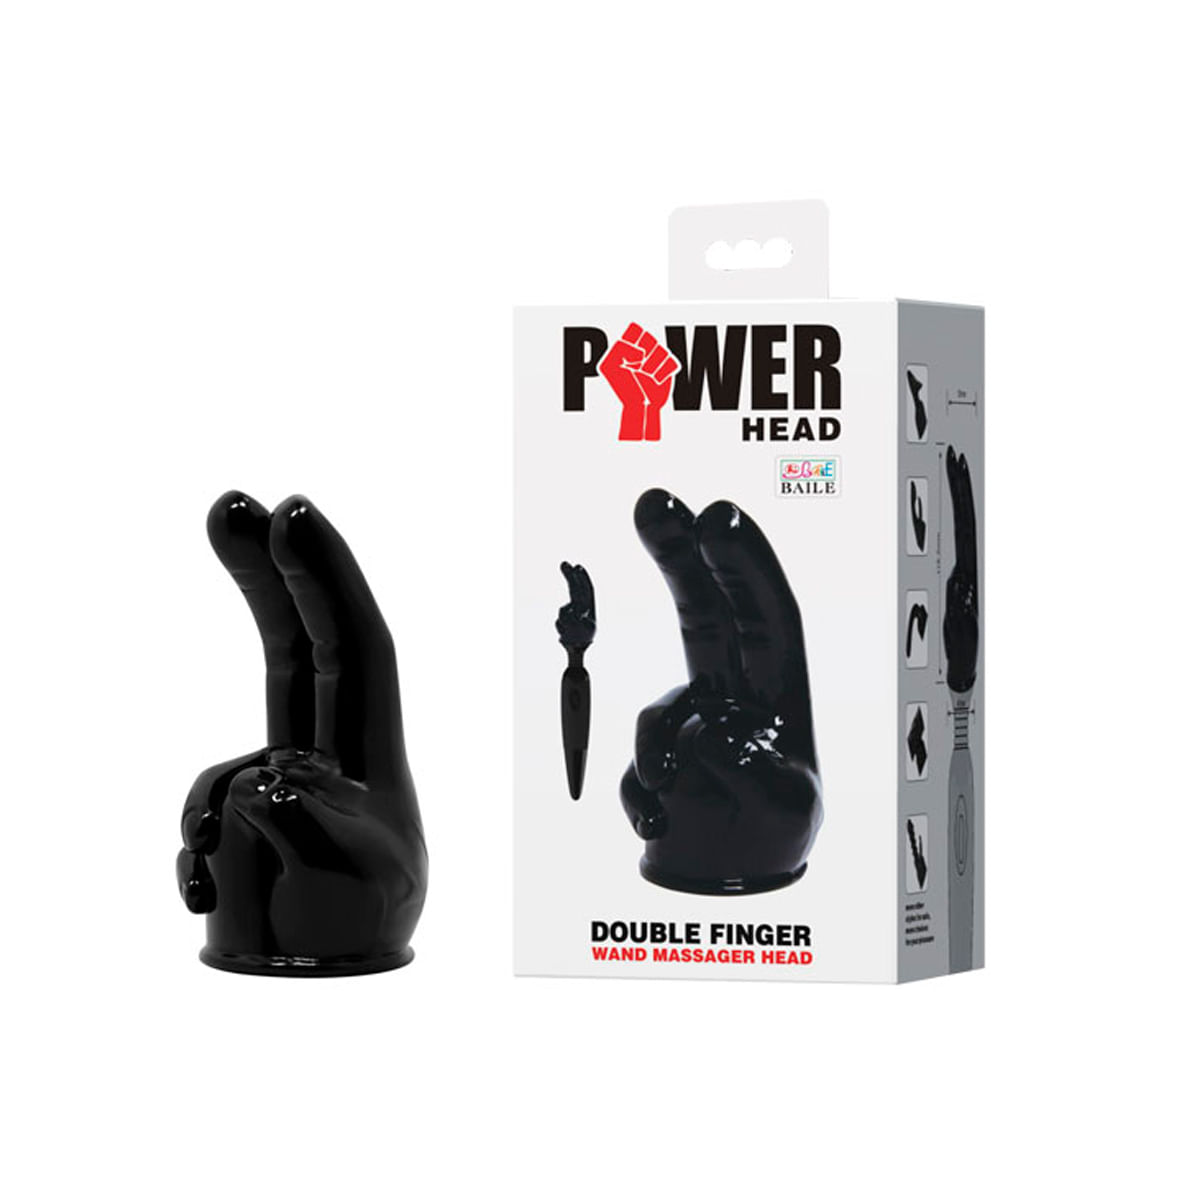 Power Head Double Finger Cabeça para Massageador Corporal no Formato de Mão com 2 Dedos 3R Import